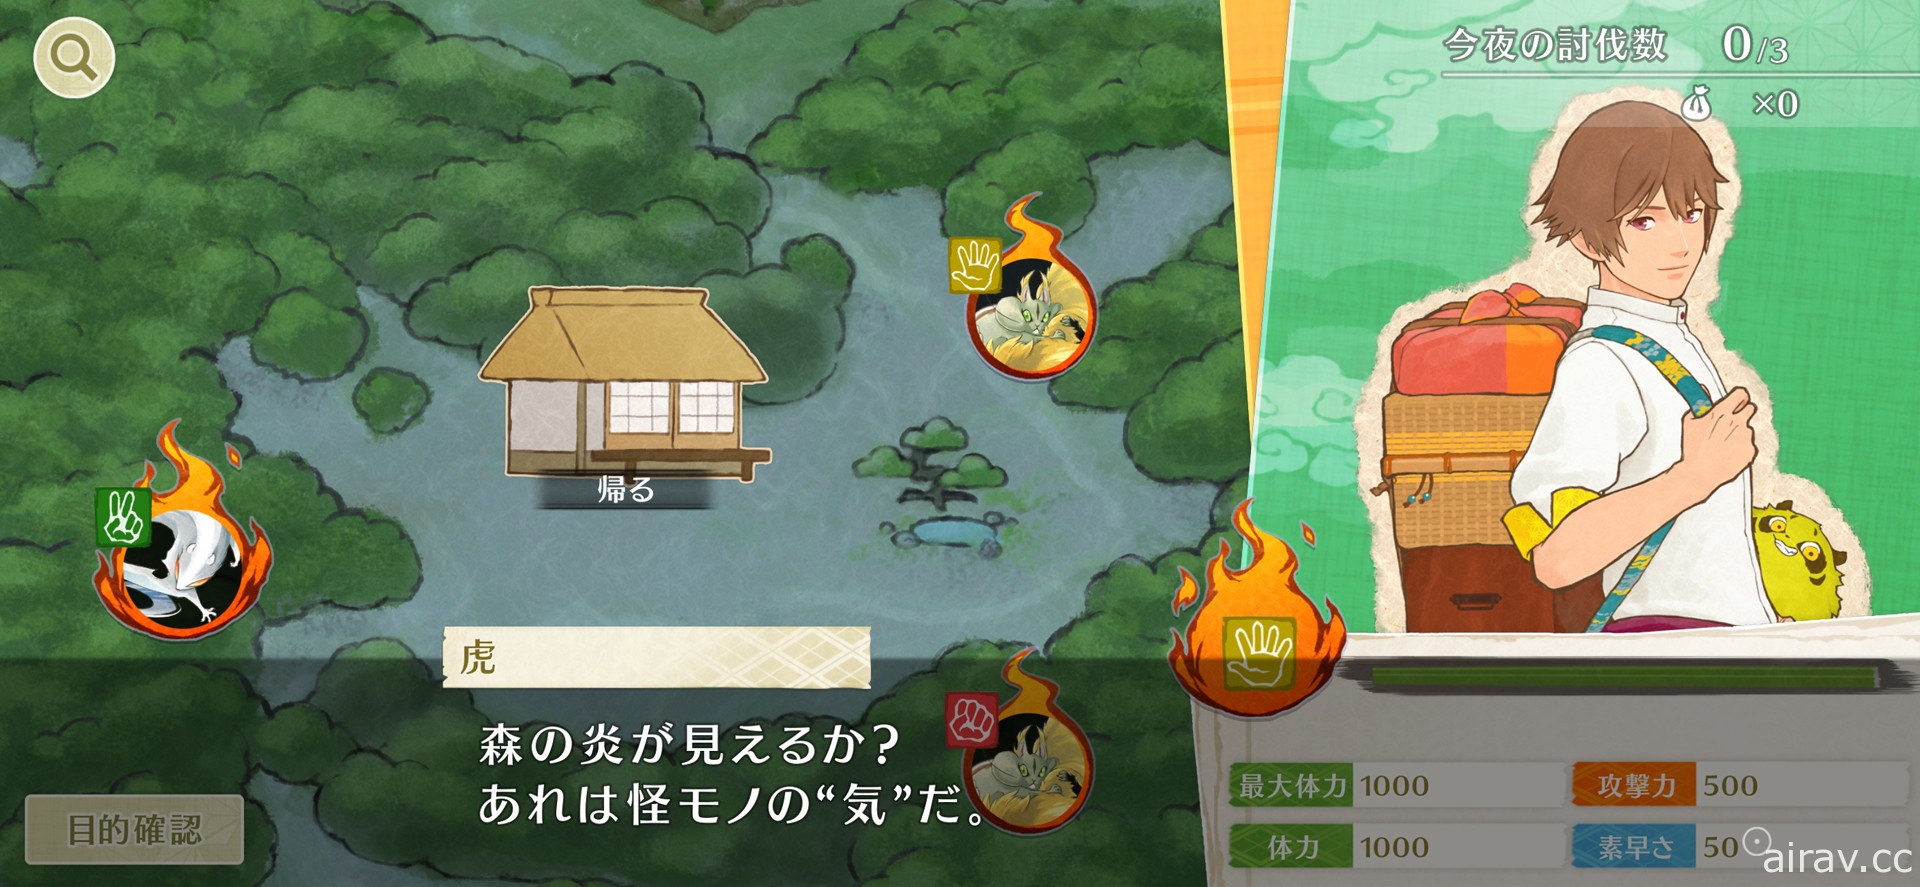 冒險遊戲《田園男子與小妖怪》於日本推出 在田園間體驗人與小妖怪的療癒生活